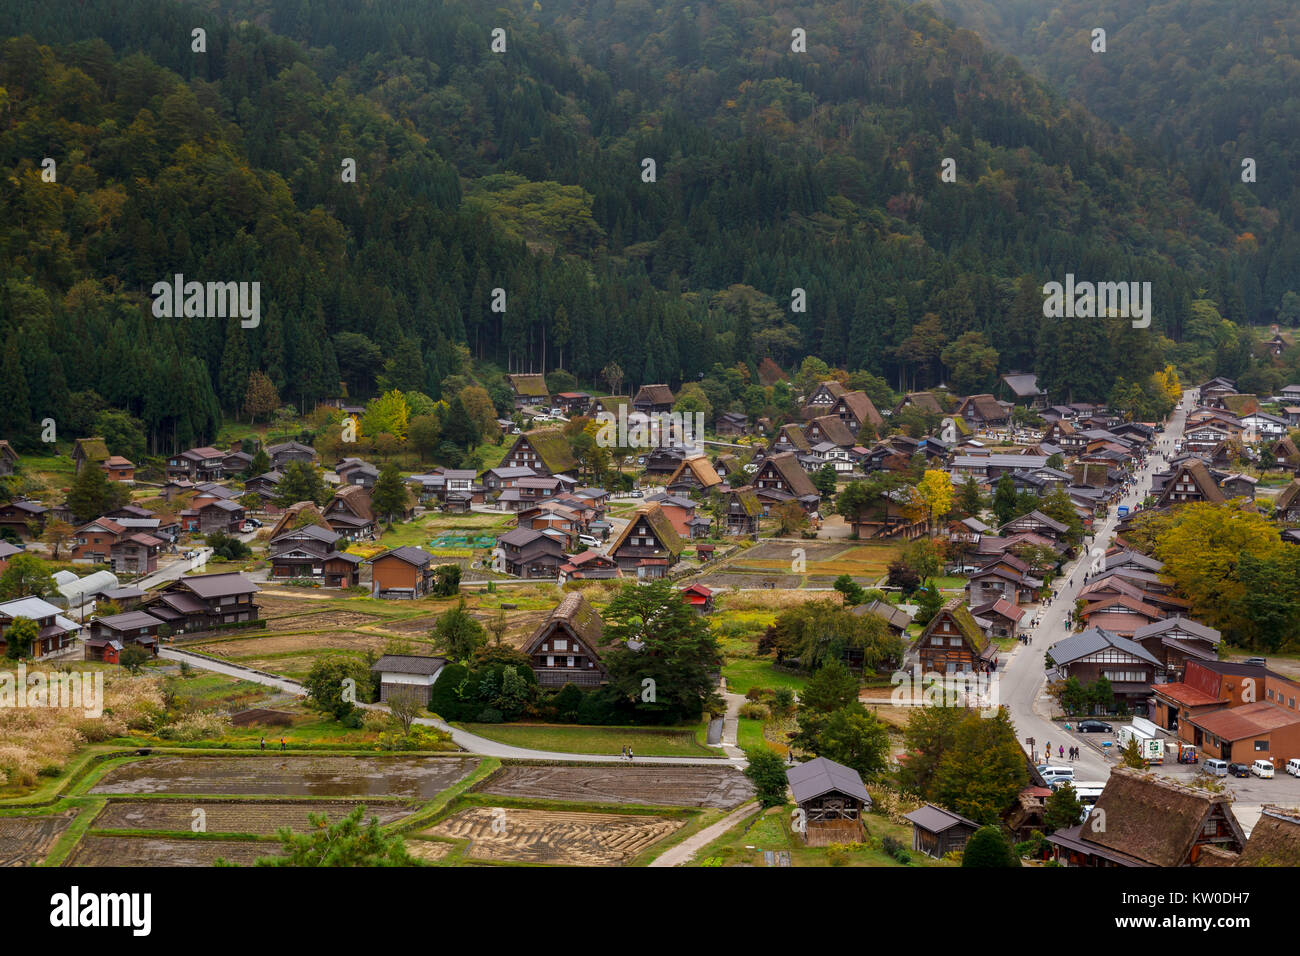 Village de Shirakawa-go dans la préfecture de Gifu, Japon. C'est l'un des sites du patrimoine mondial de l'UNESCO. Banque D'Images